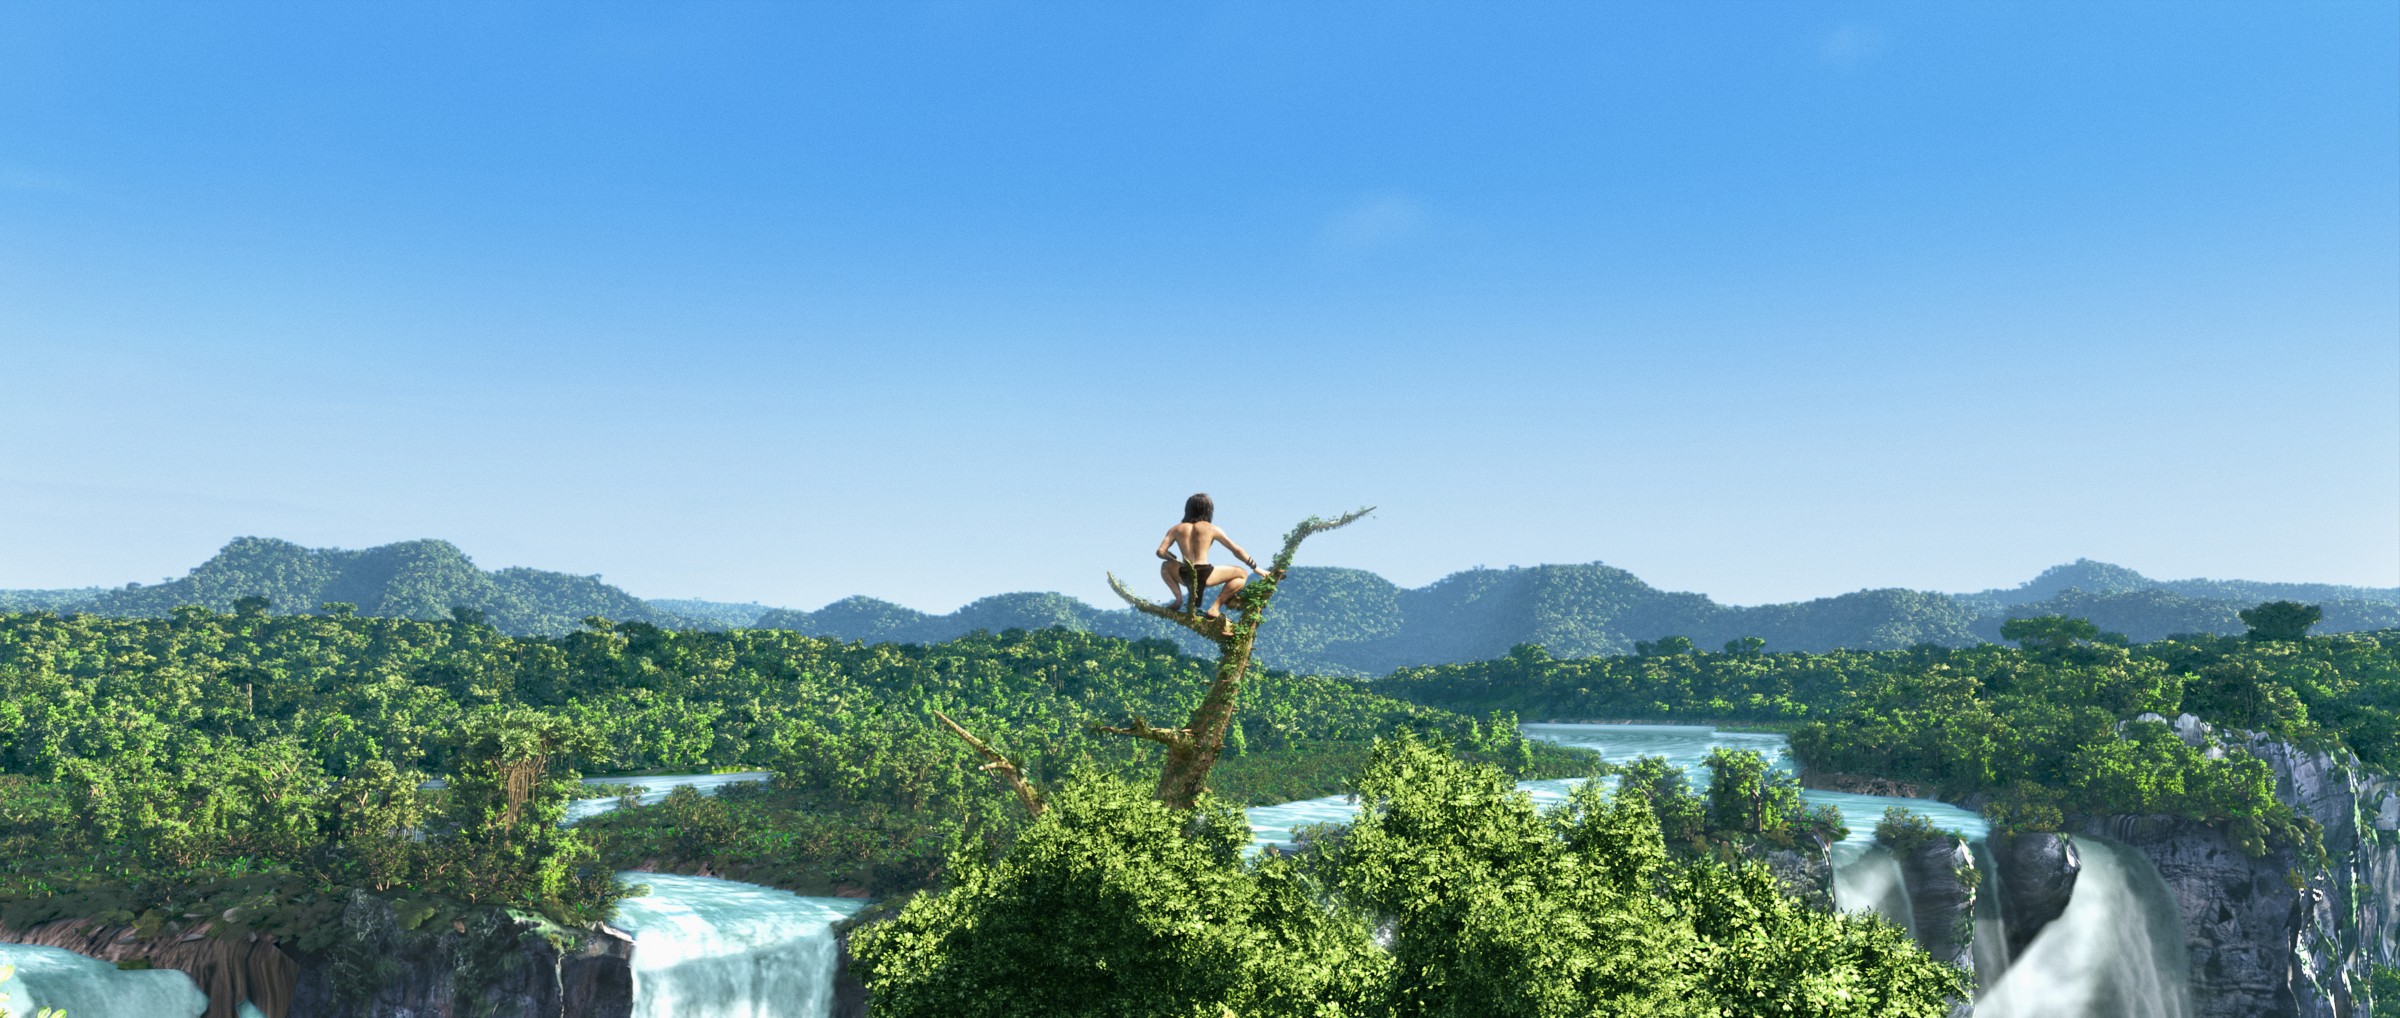 Tarzan 3D-Animation Official Poster Banner PROMO PHOTOS-10DEZEMBRO2013-01